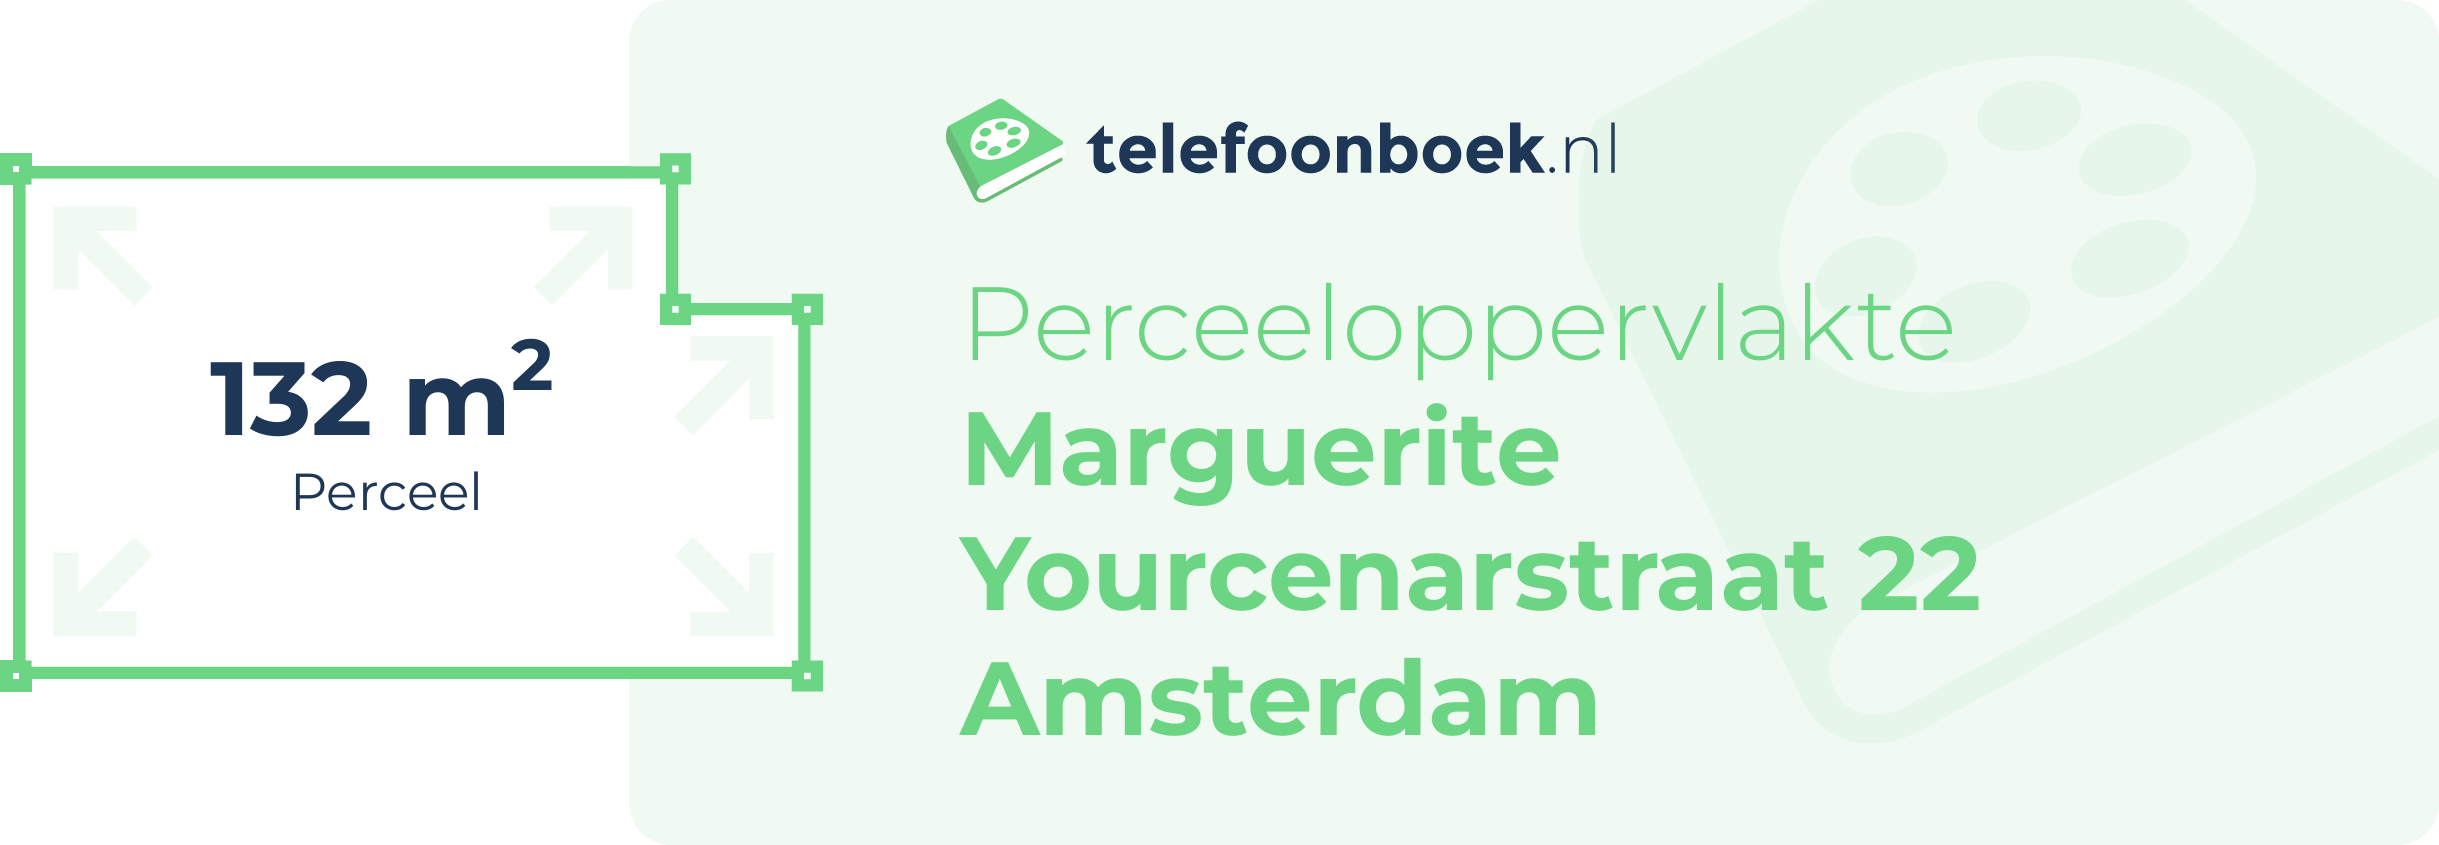 Perceeloppervlakte Marguerite Yourcenarstraat 22 Amsterdam